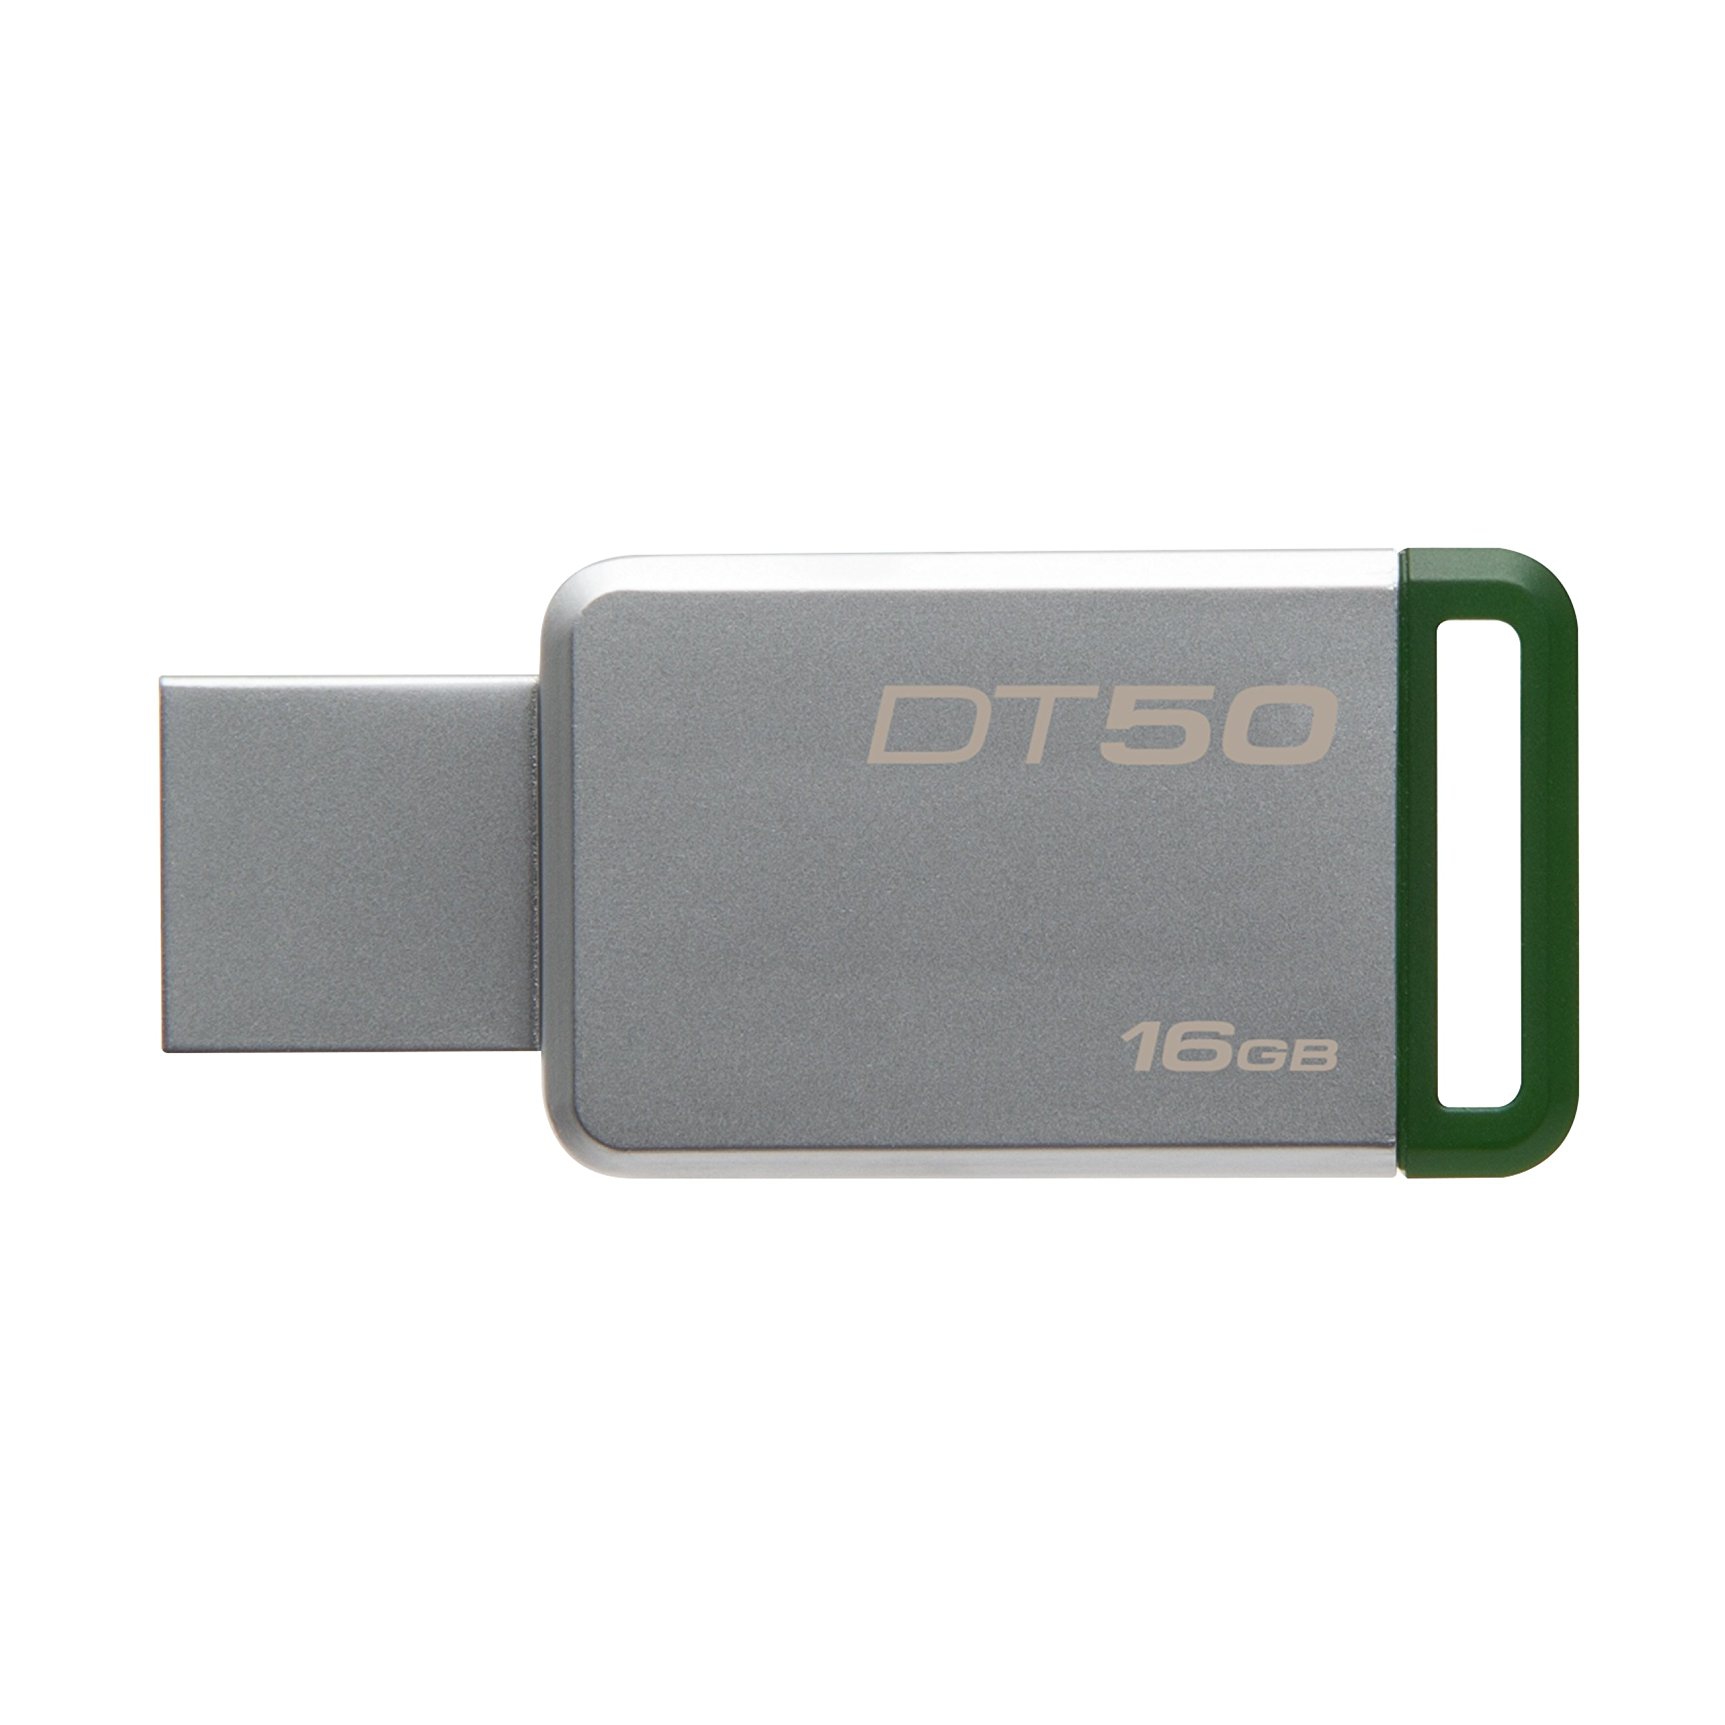 ΜΝΗΜΗ USB FLASH 16GB KINGSTONE DT50